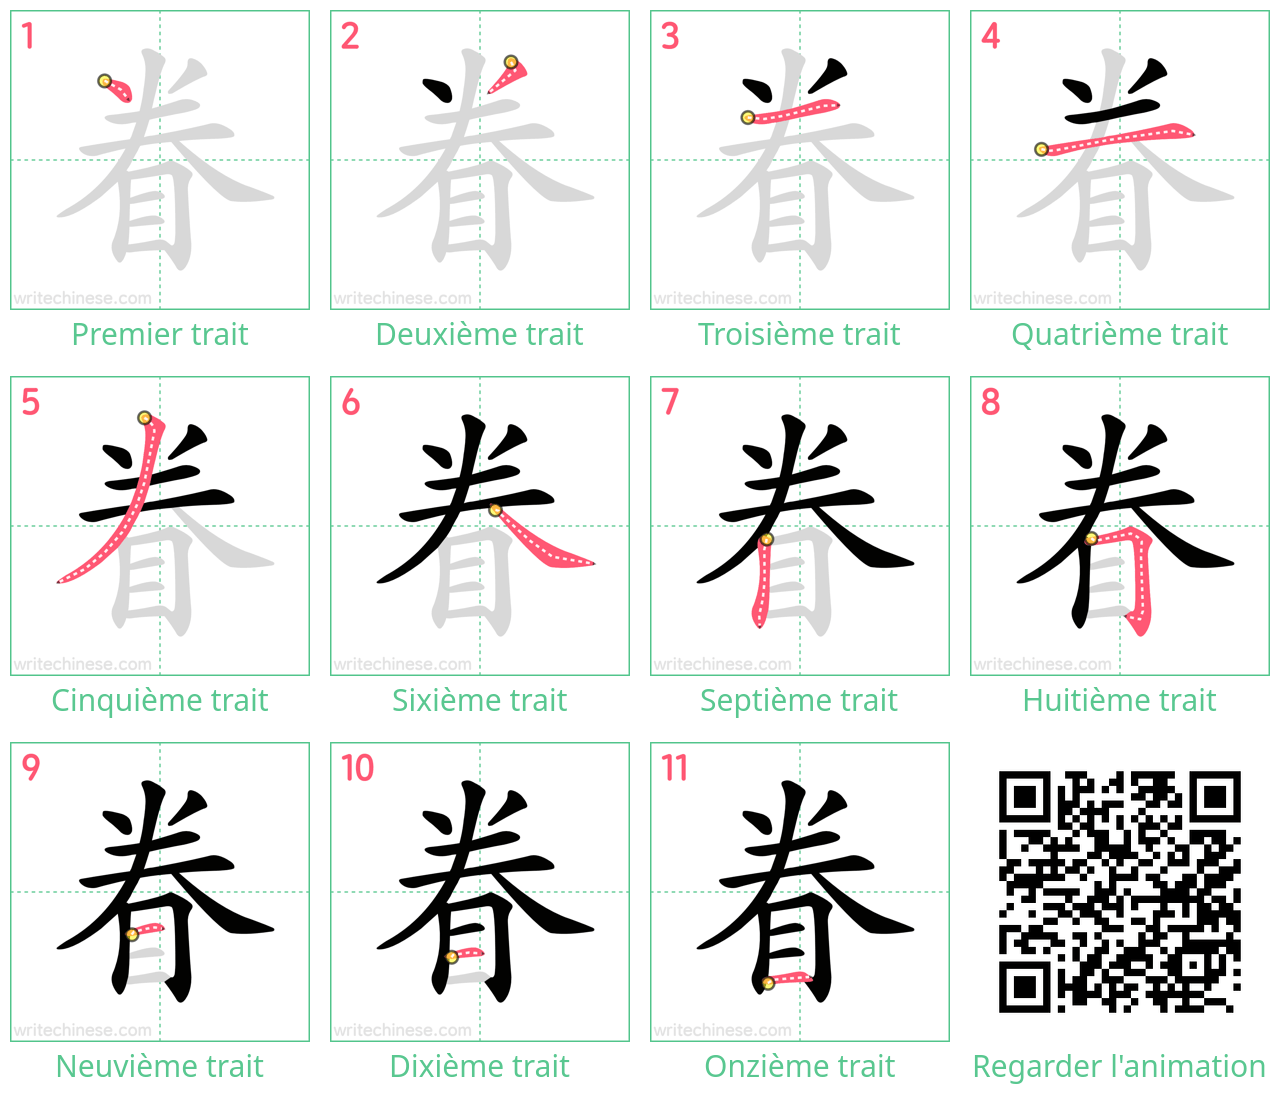 Diagrammes d'ordre des traits étape par étape pour le caractère 眷